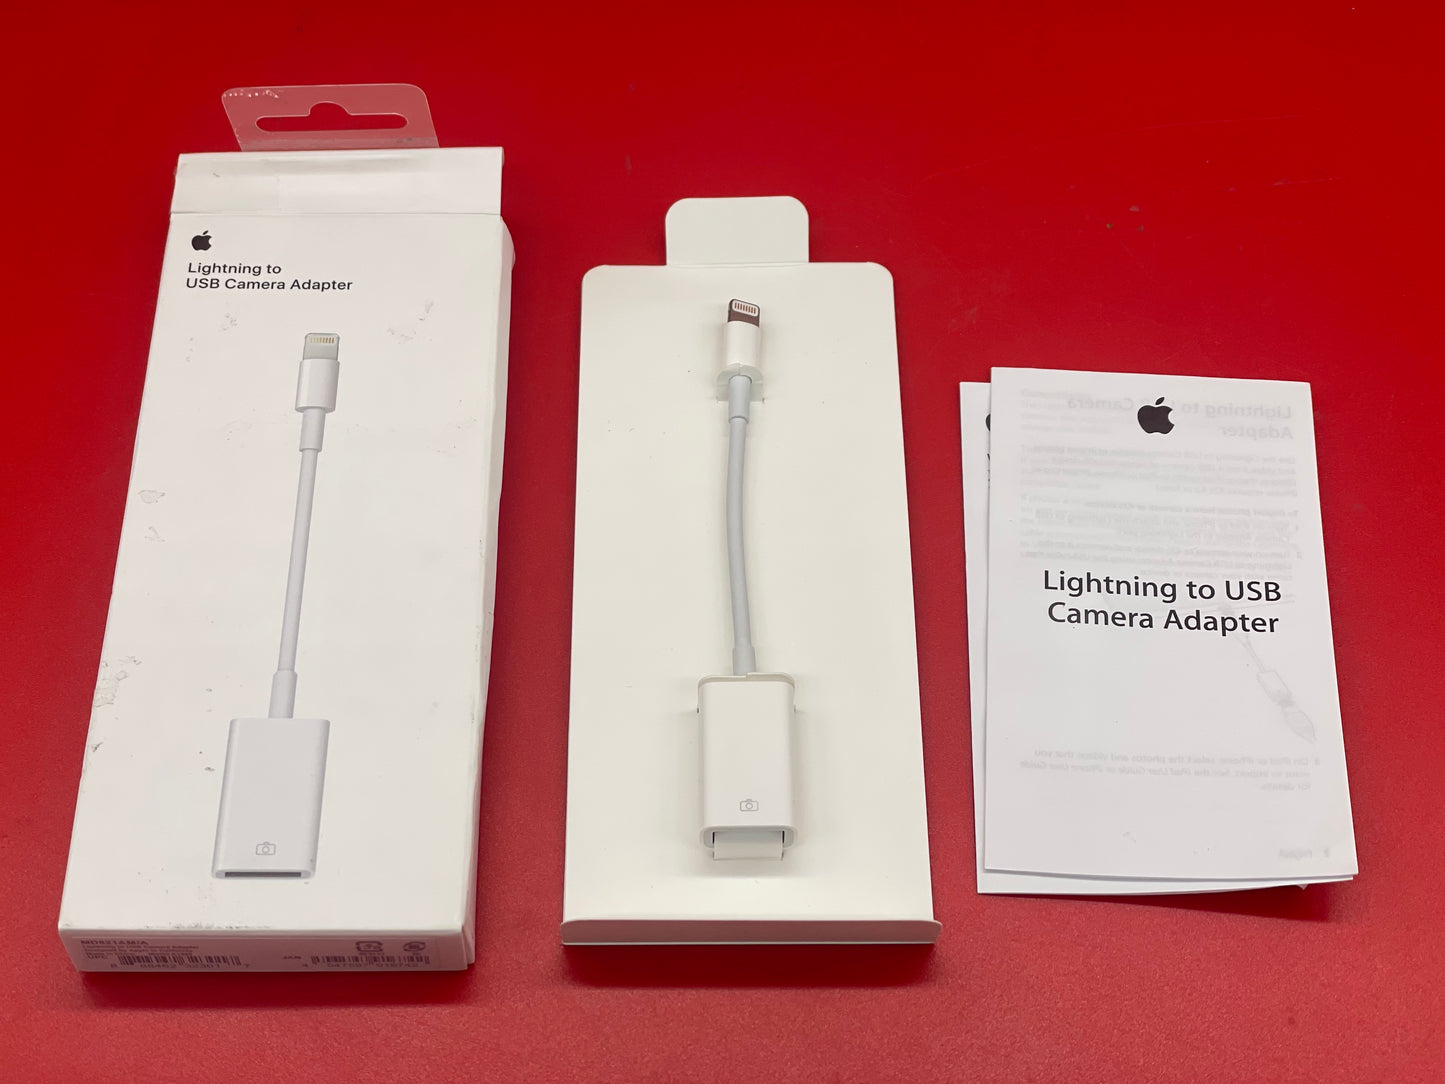 Apple - Lightning to Digital AV Adapter **Open Box**